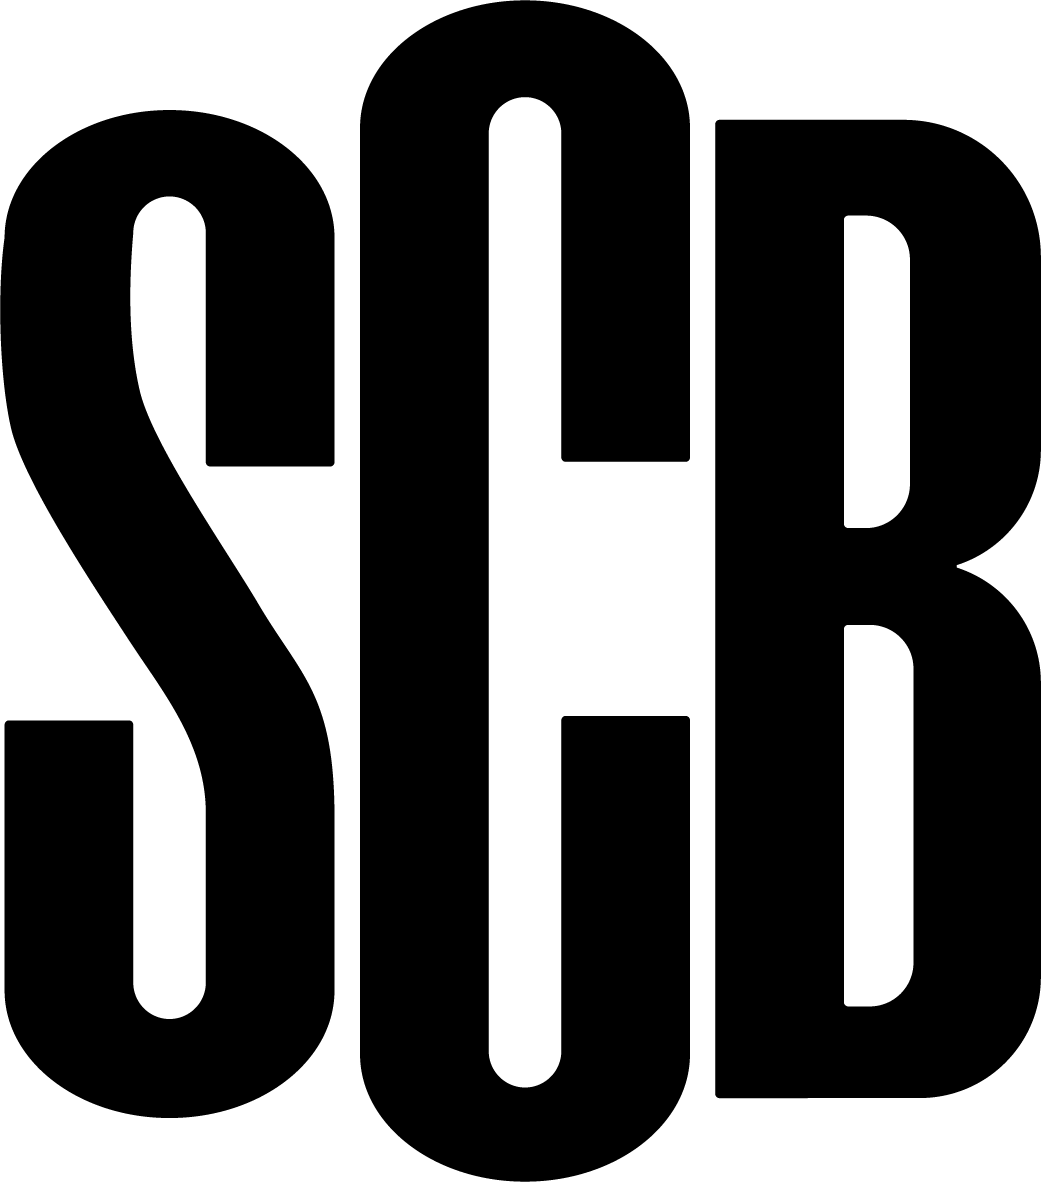 Hempkop logo